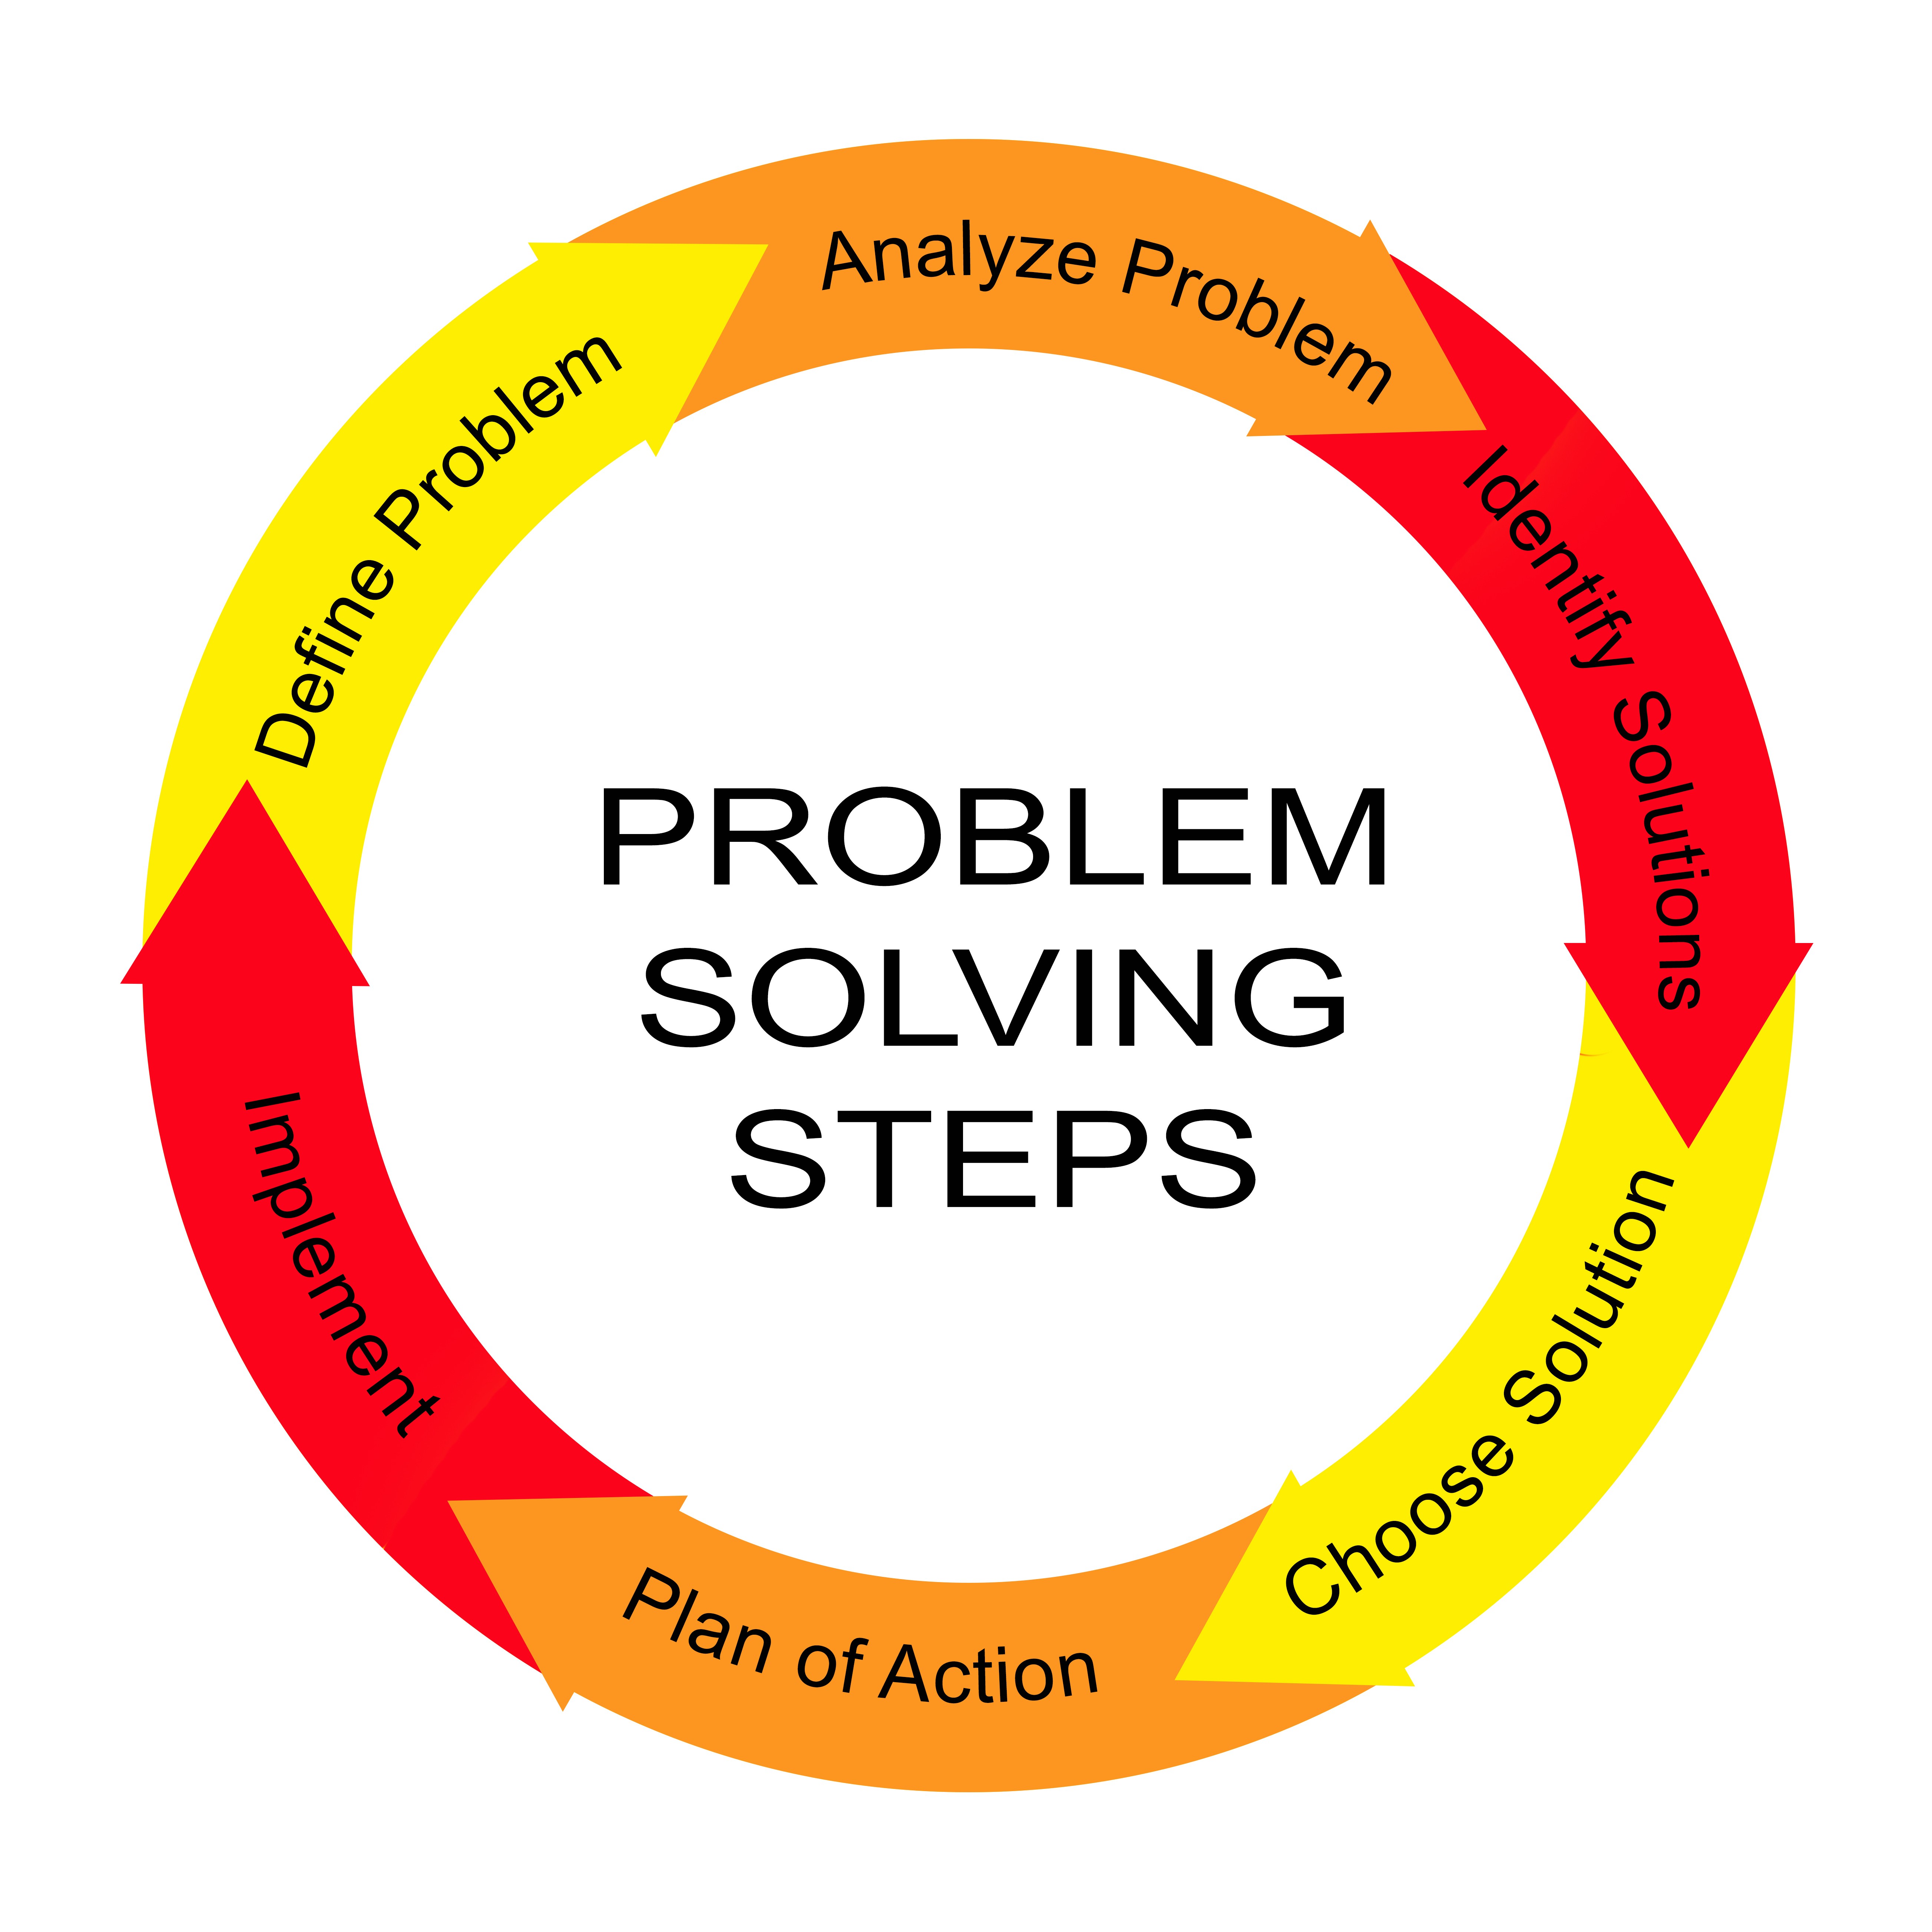 6 steps in problem solving